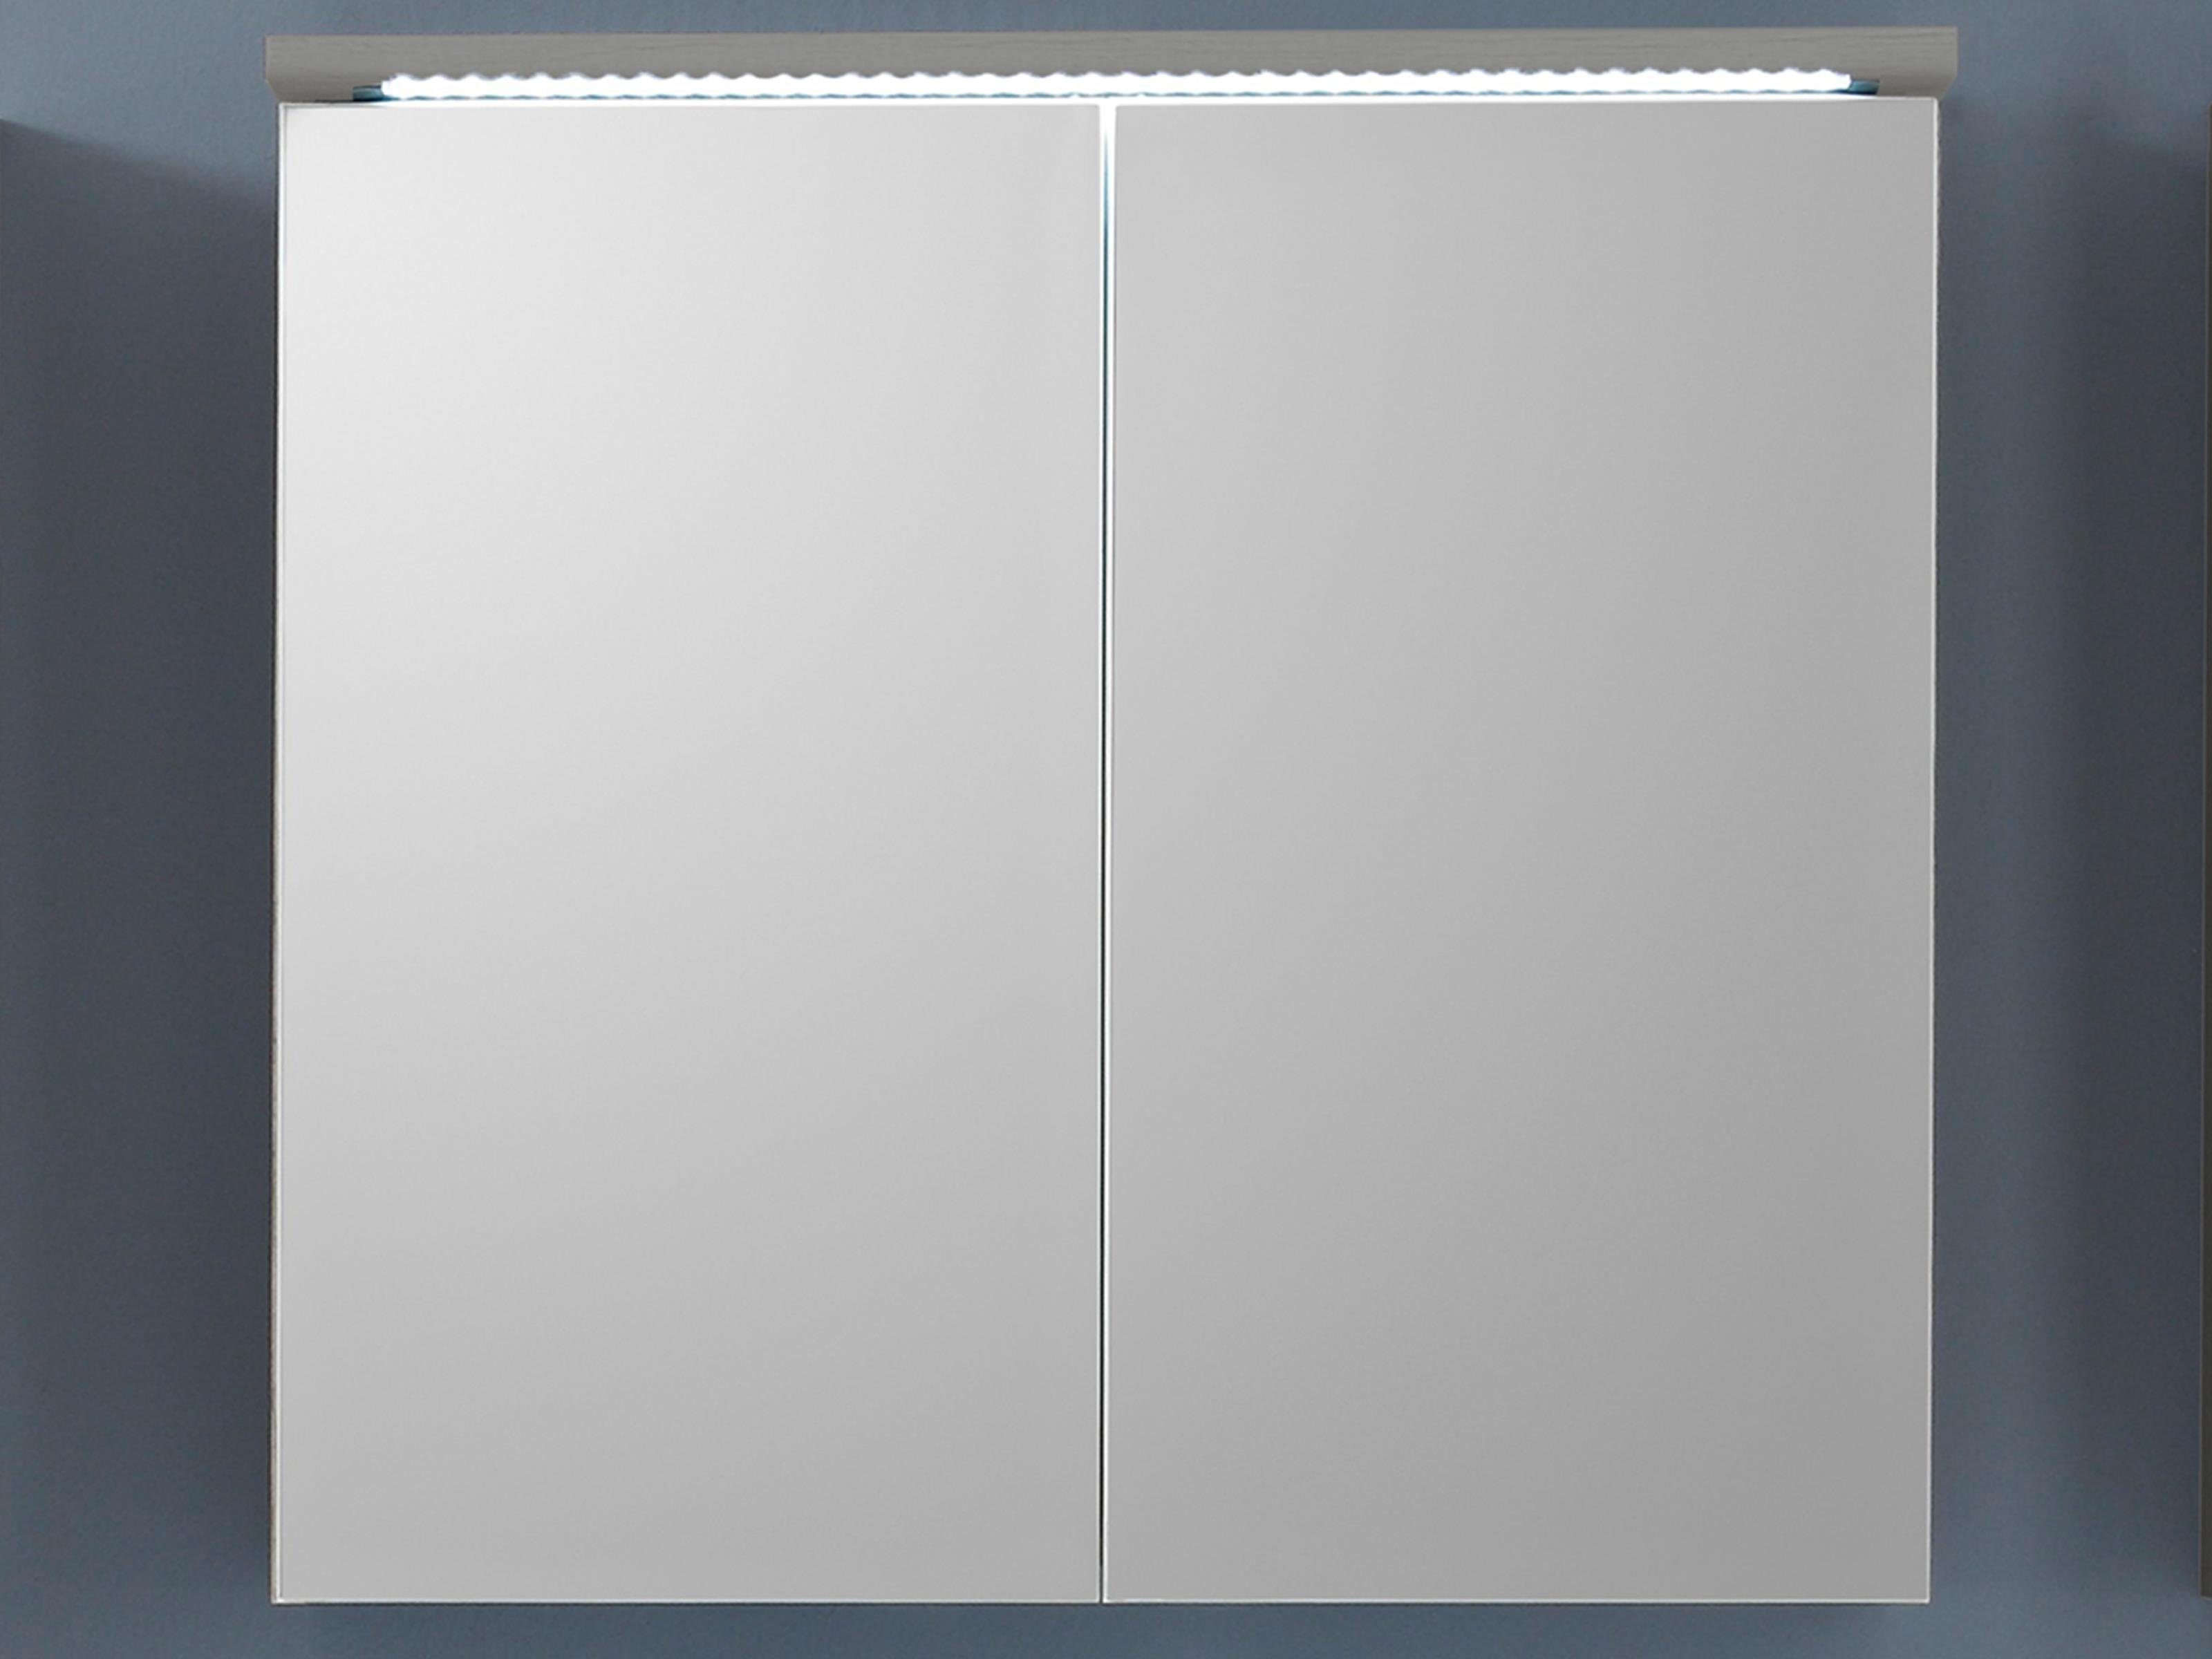 möbelando Spiegelschrank Randolph Moderner Spiegelschrank aus Spanplatte in Titan mit 2 Spiegeltüren und 2 Glaseinlegeböden, inkl. LED-Beleuchtung. Breite 80 cm, Höhe 77 cm, Tiefe 23 cm